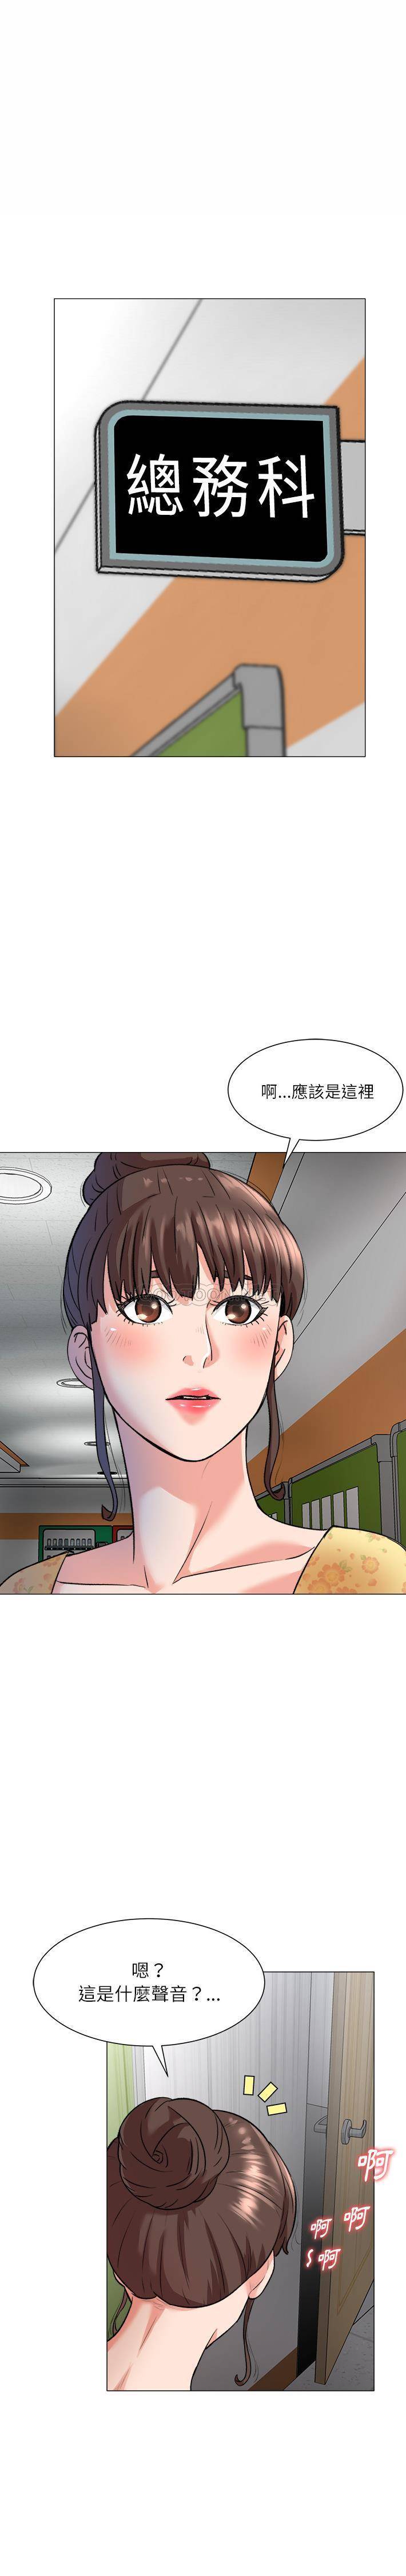 韩国污漫画 豪賭陷阱 第2话 4